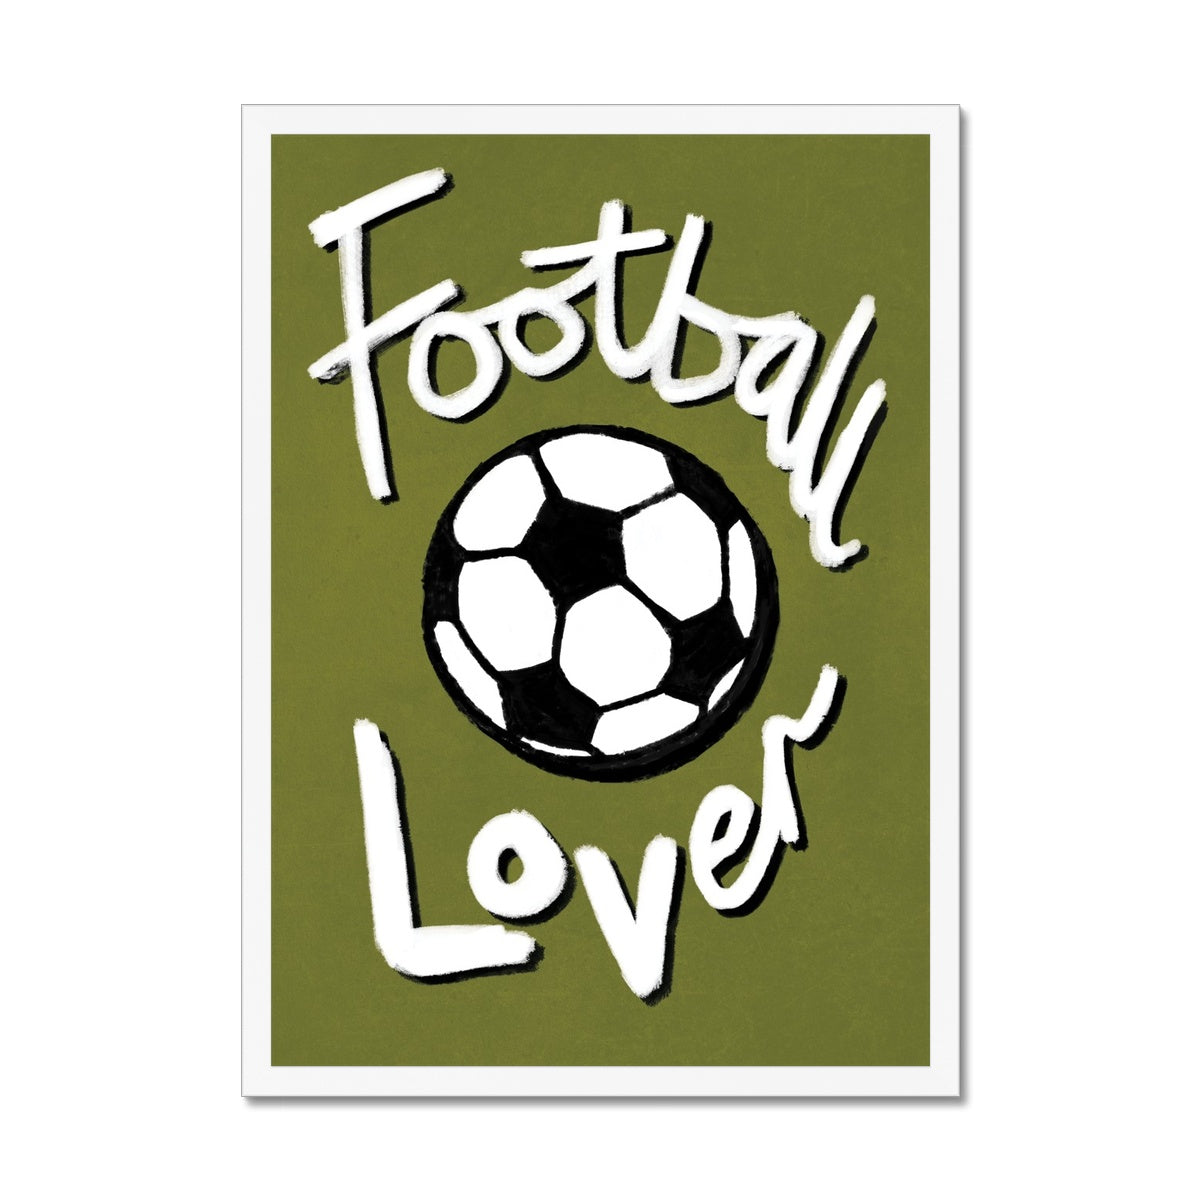 Football Lover Print - Olive Green, Black, White Framed Print